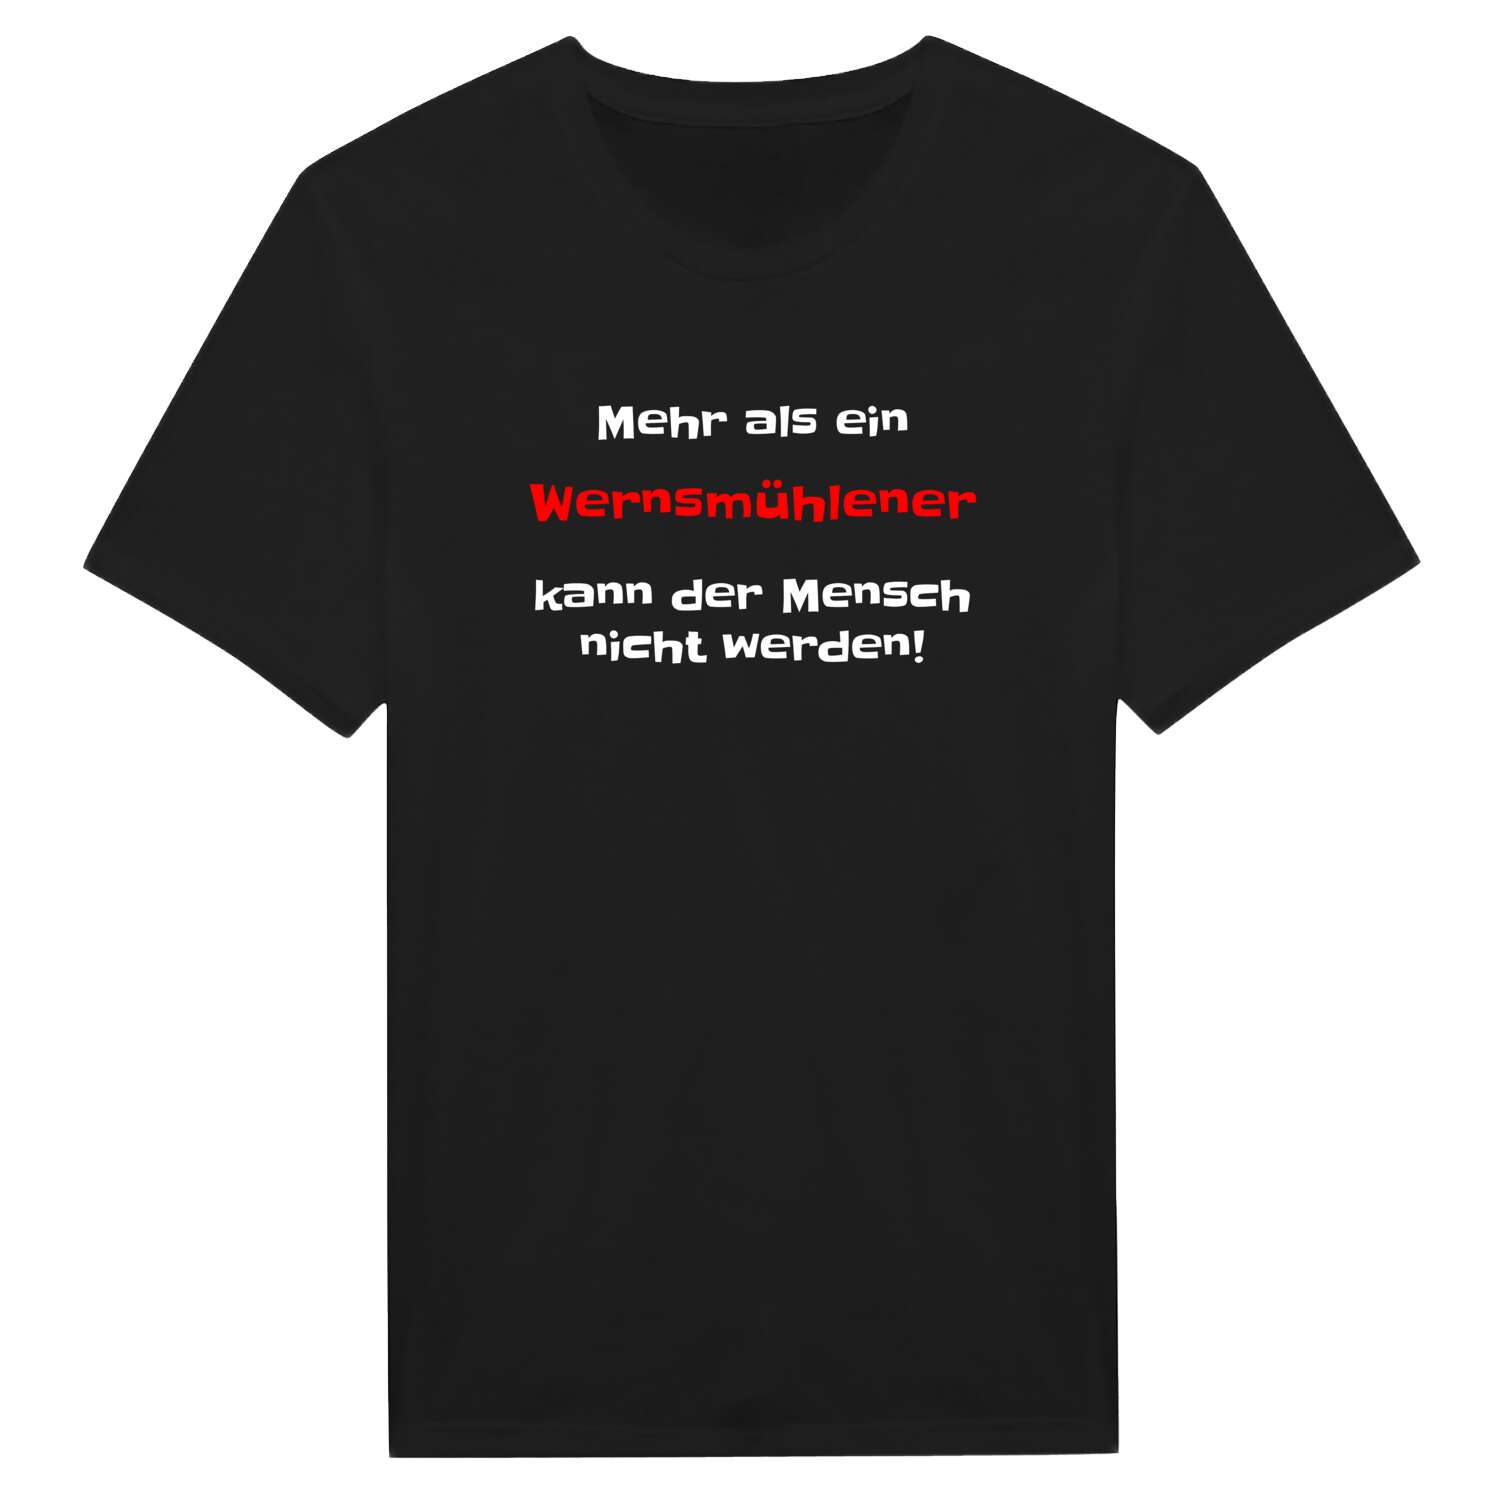 Wernsmühle T-Shirt »Mehr als ein«